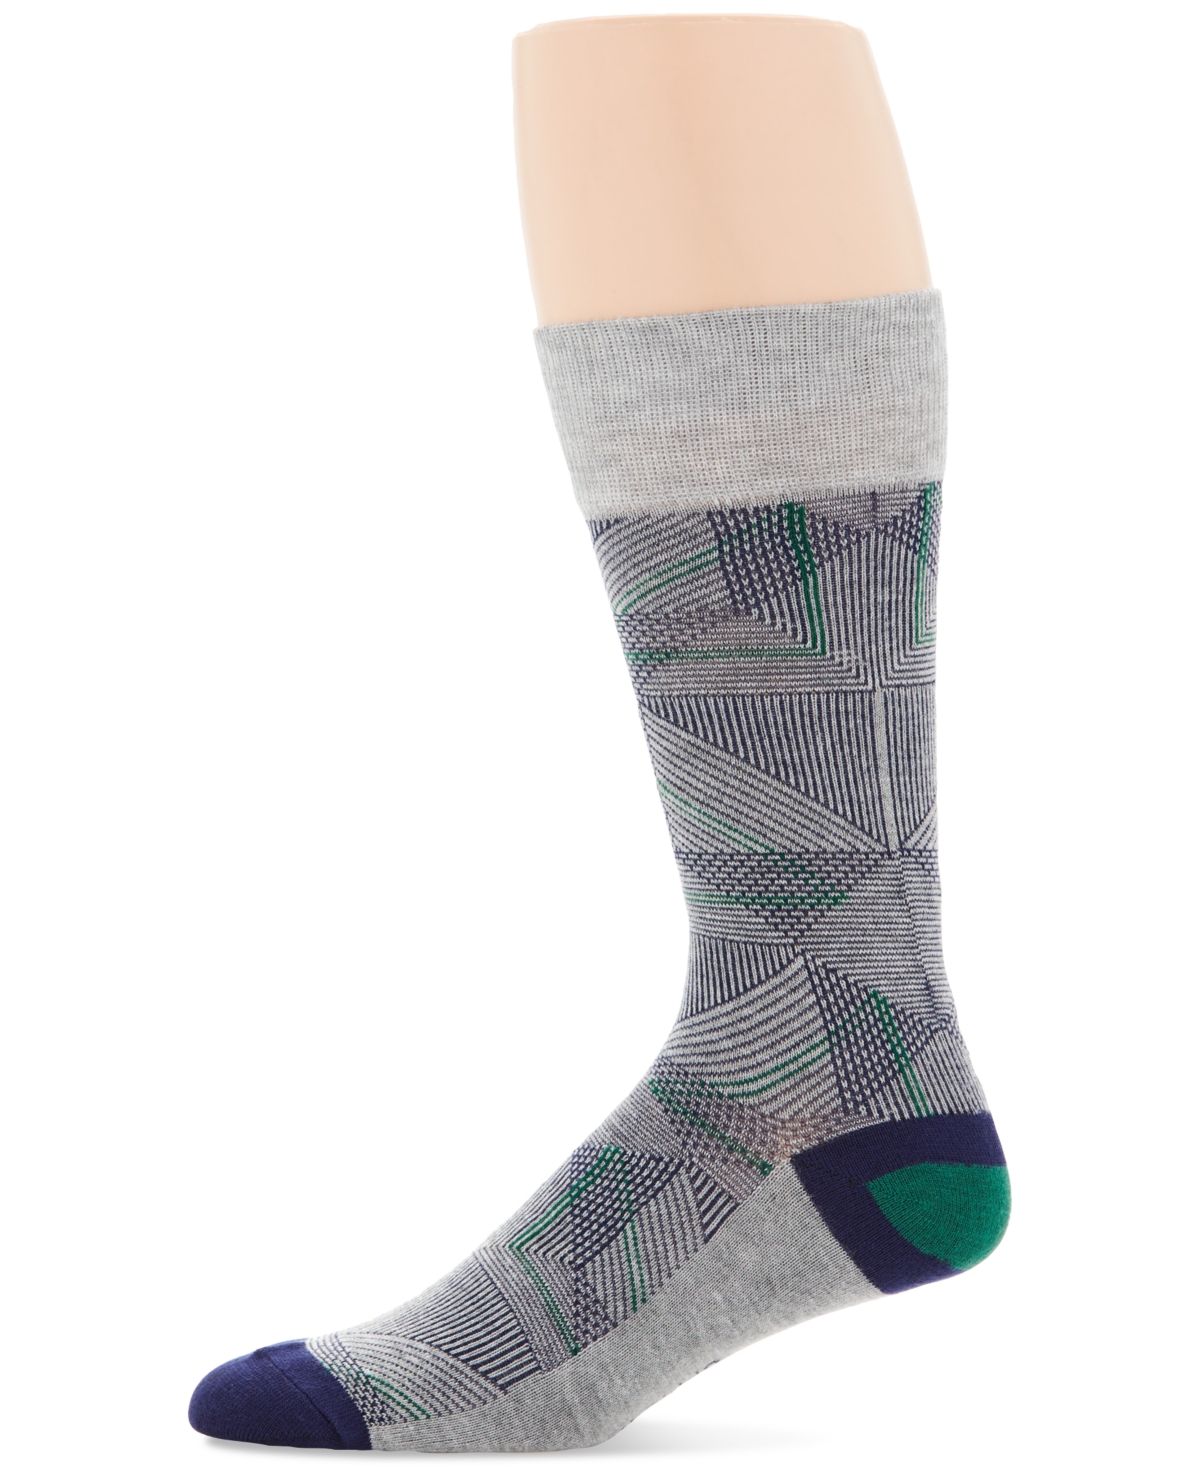 Men's Geometric Dress Socks - Grey